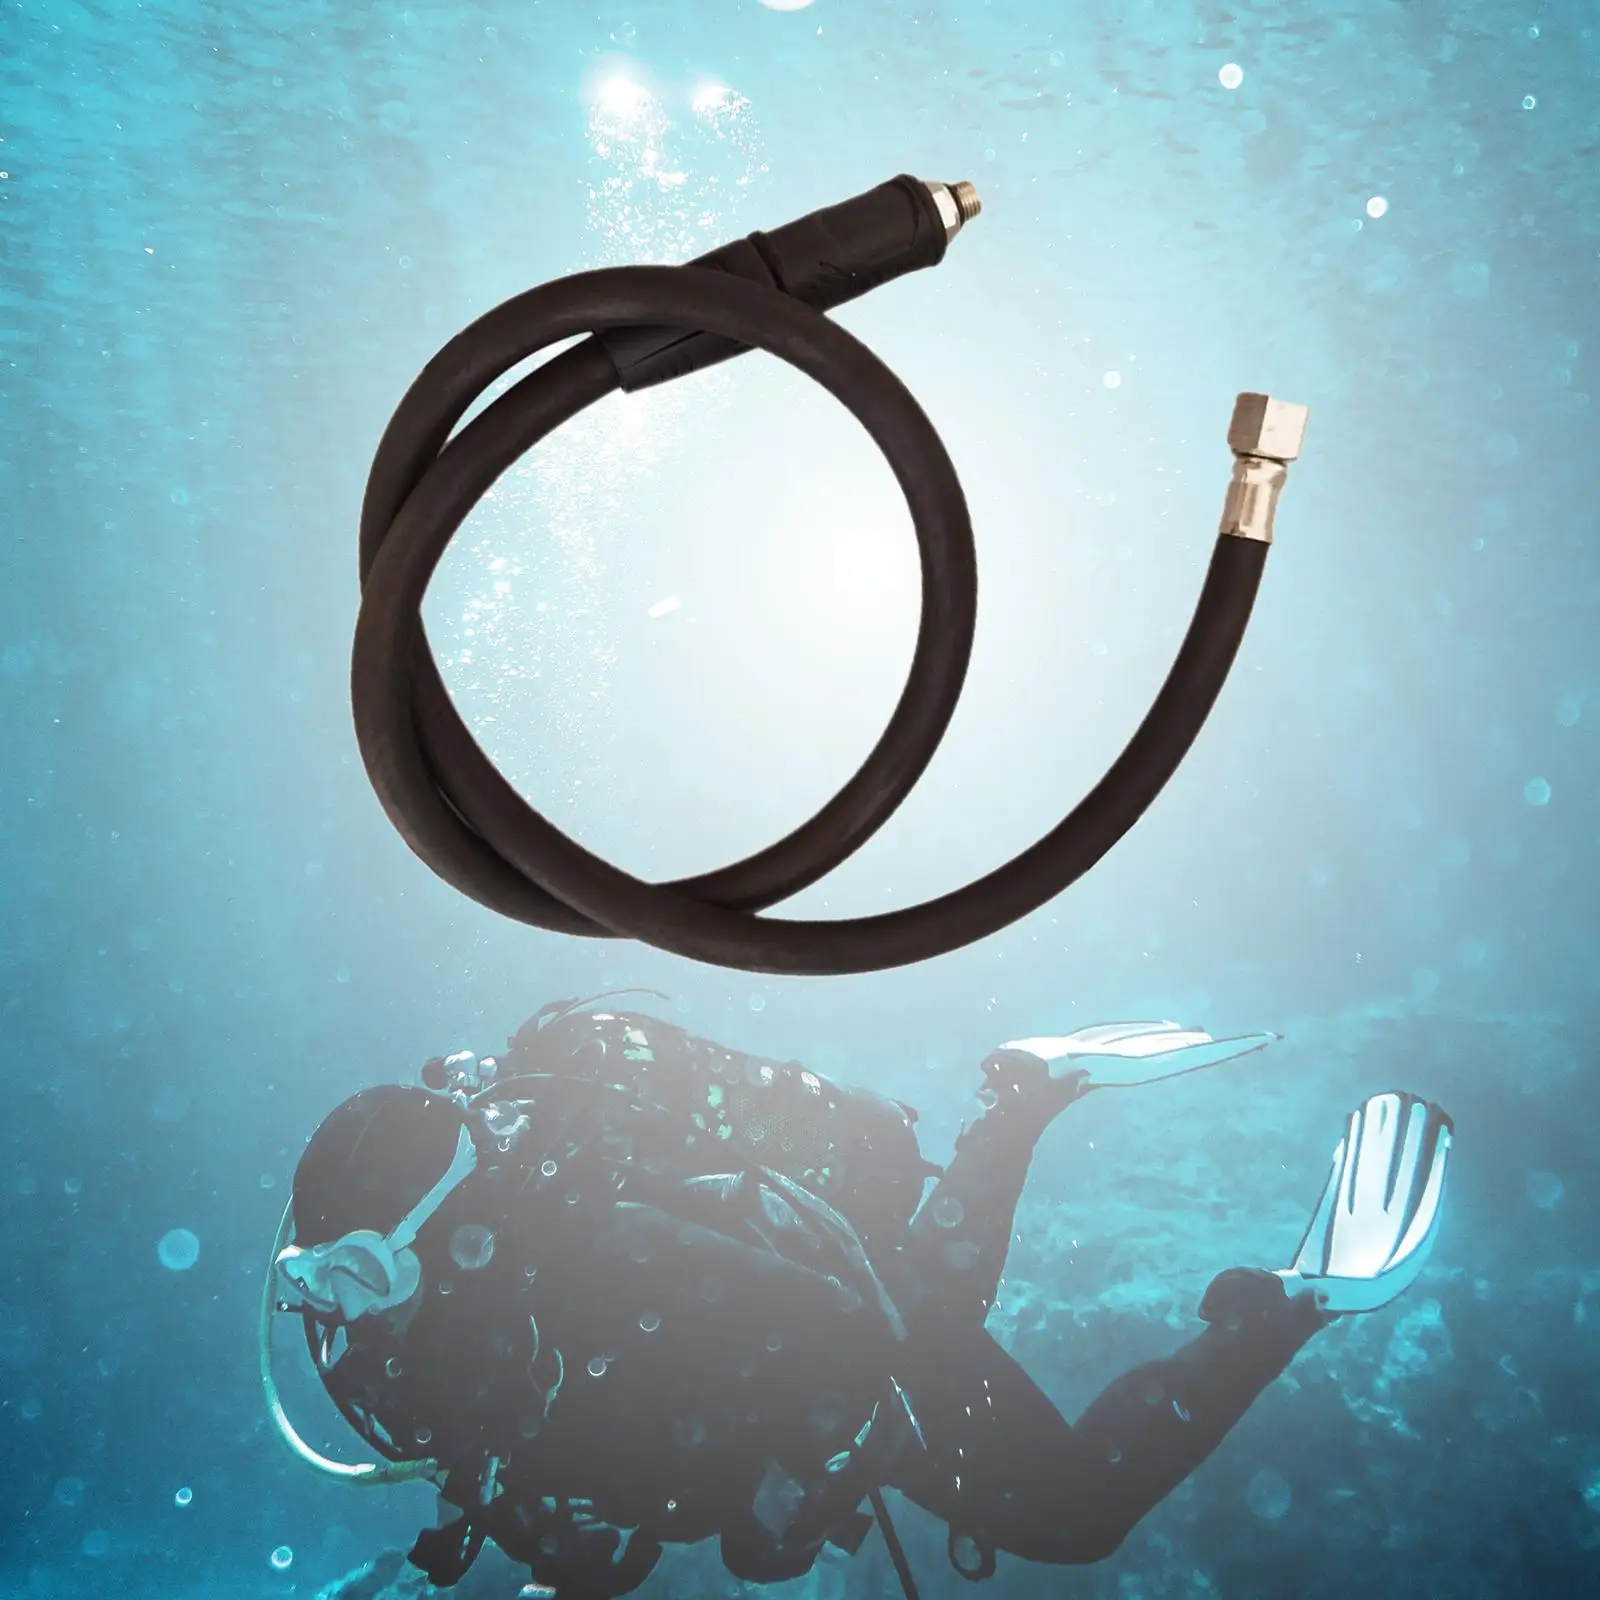 Scuba Diving Medium Pressure Hose Diving Regulator Accessories for Underwater